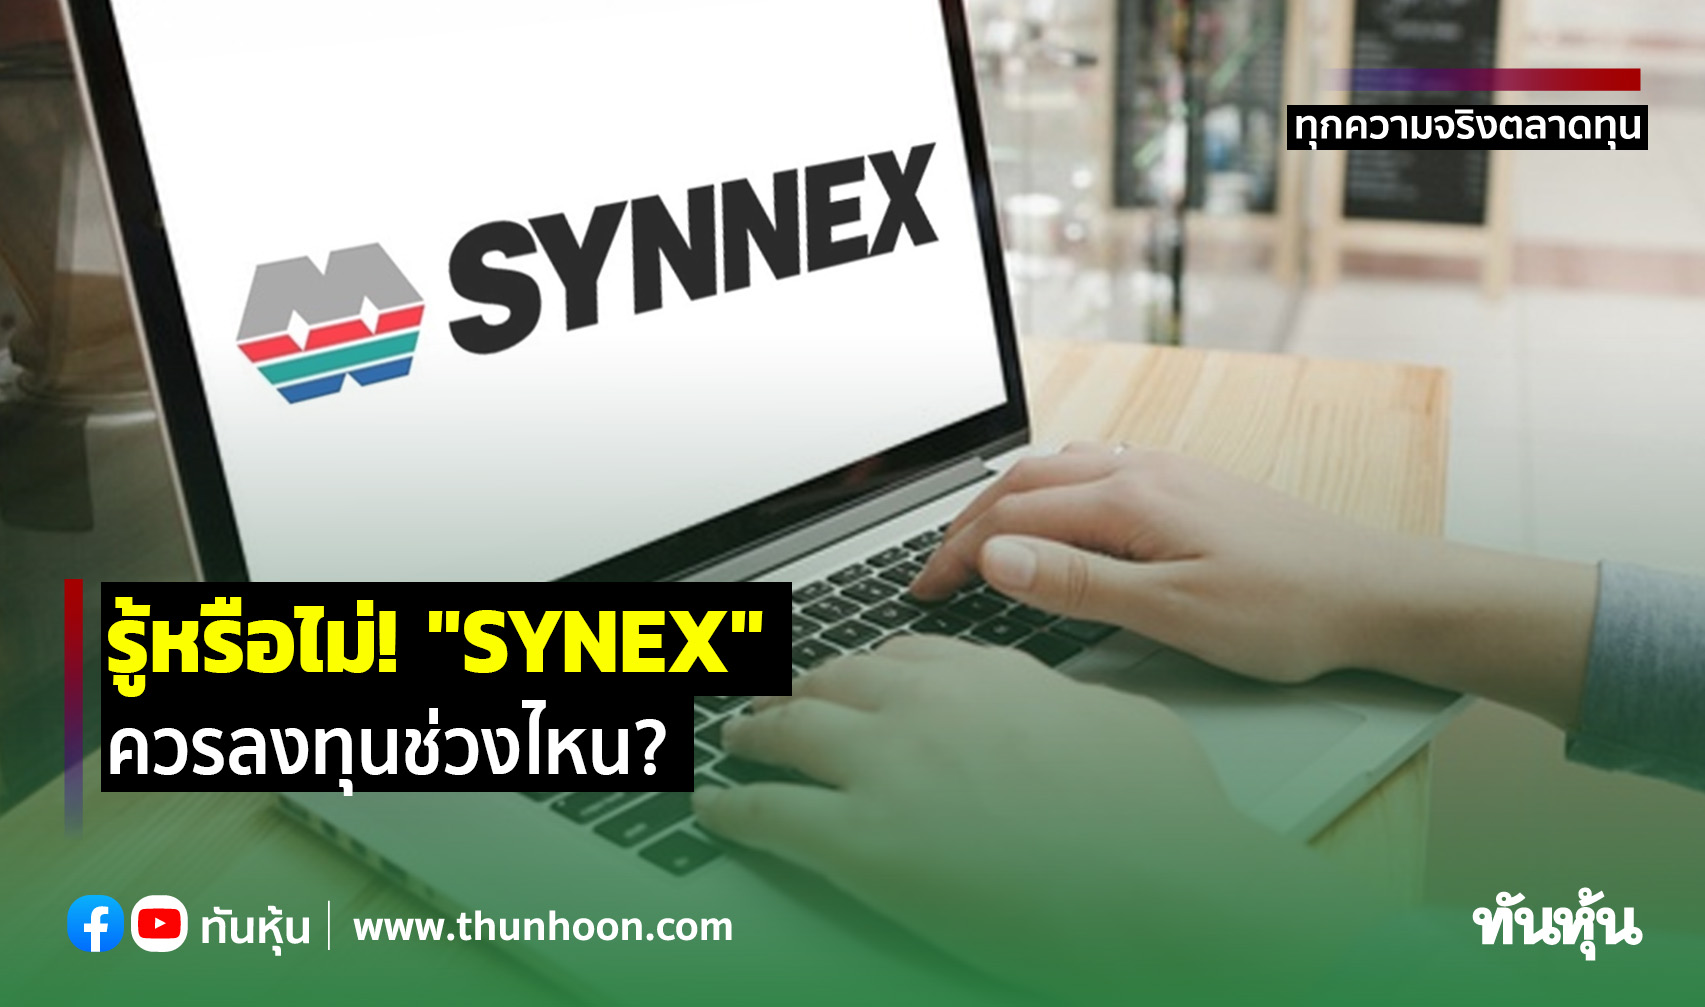  รู้หรือไม่! "SYNEX" ควรลงทุนช่วงไหน?